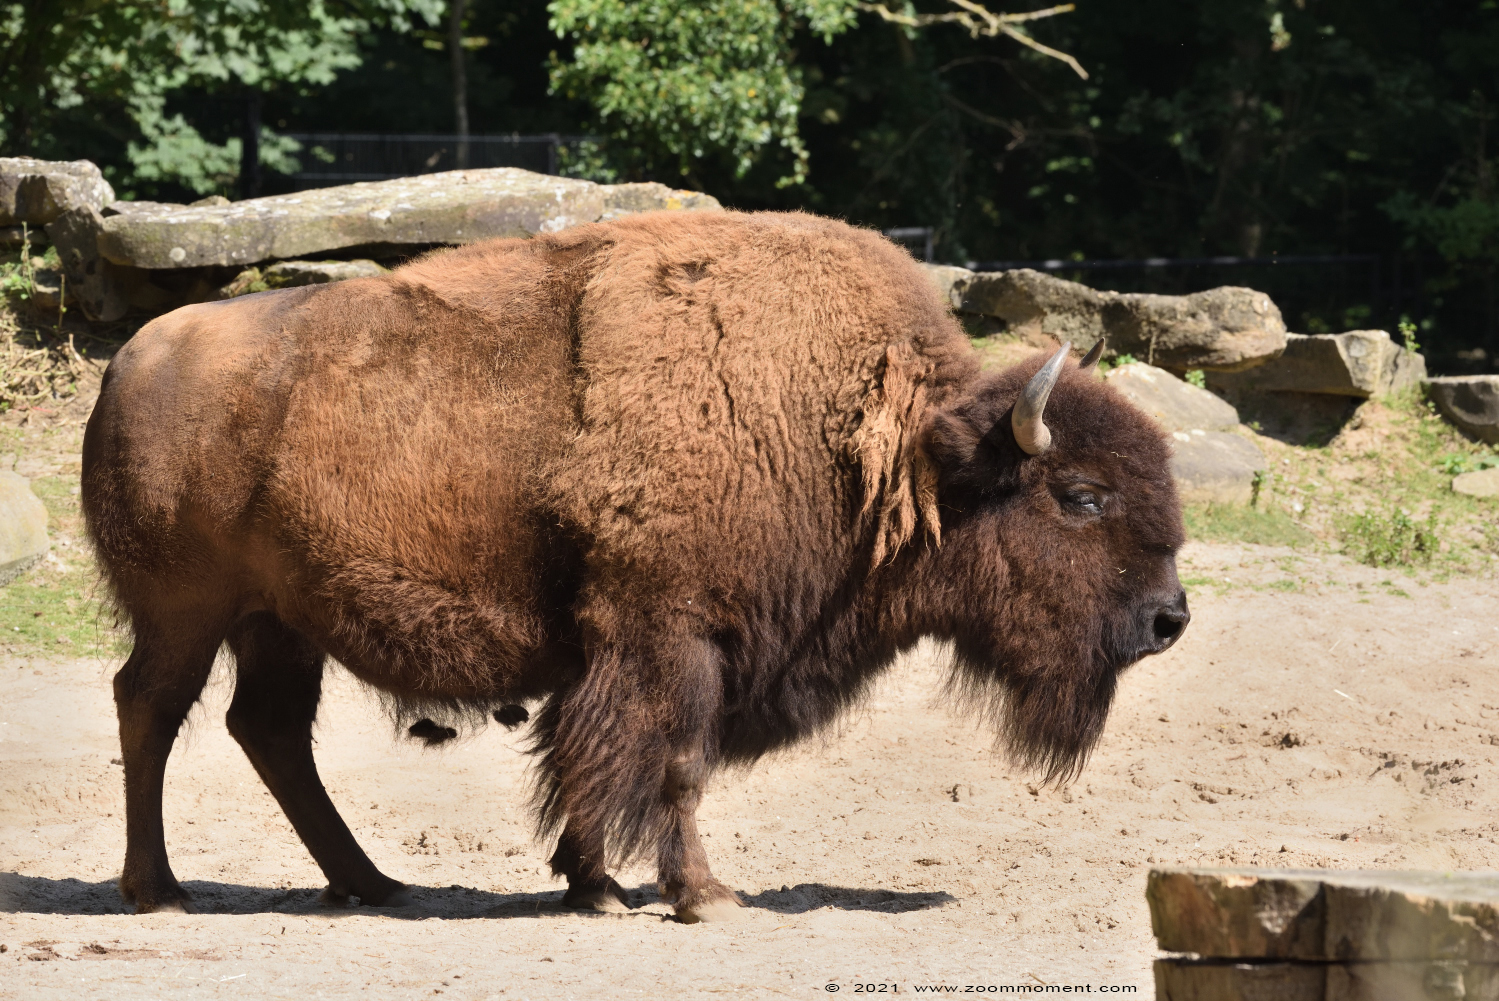 bizon ( Bison bison )
Trefwoorden: Planckendael Belgium bizon Bison bison